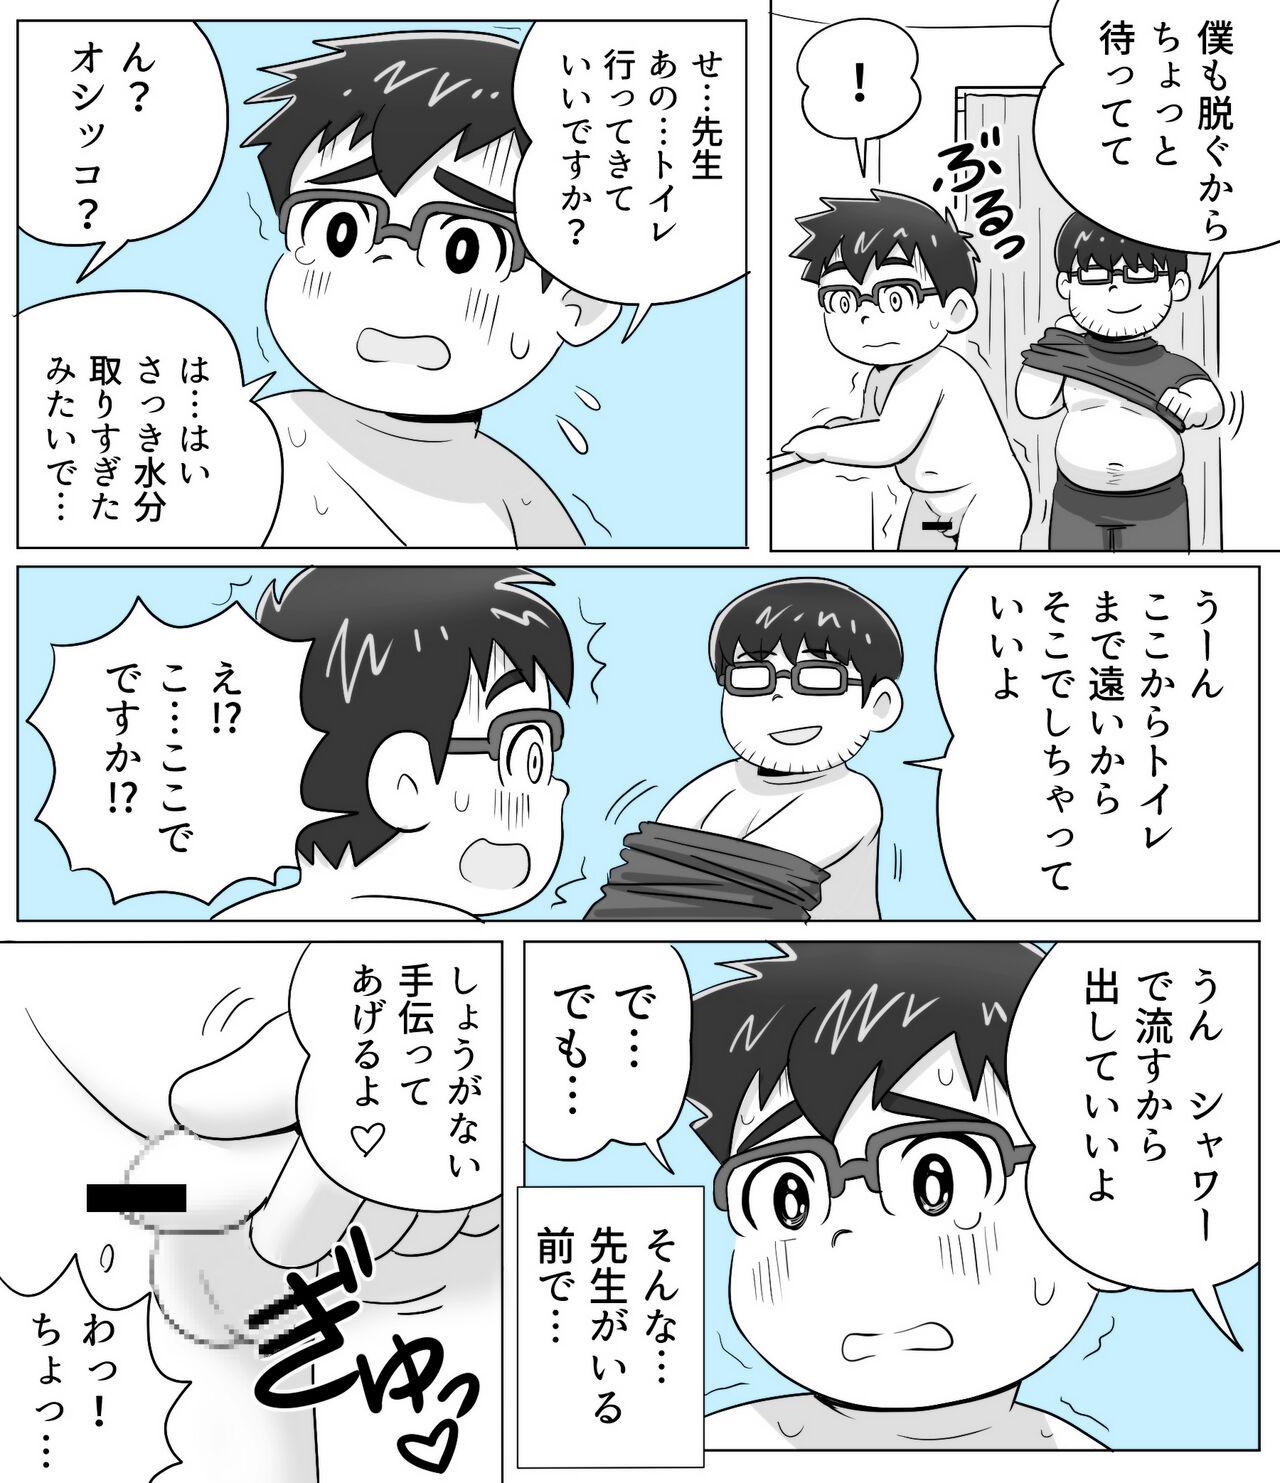 obeccho - 短編漫画「施術にようこそ！剣くん編」 11